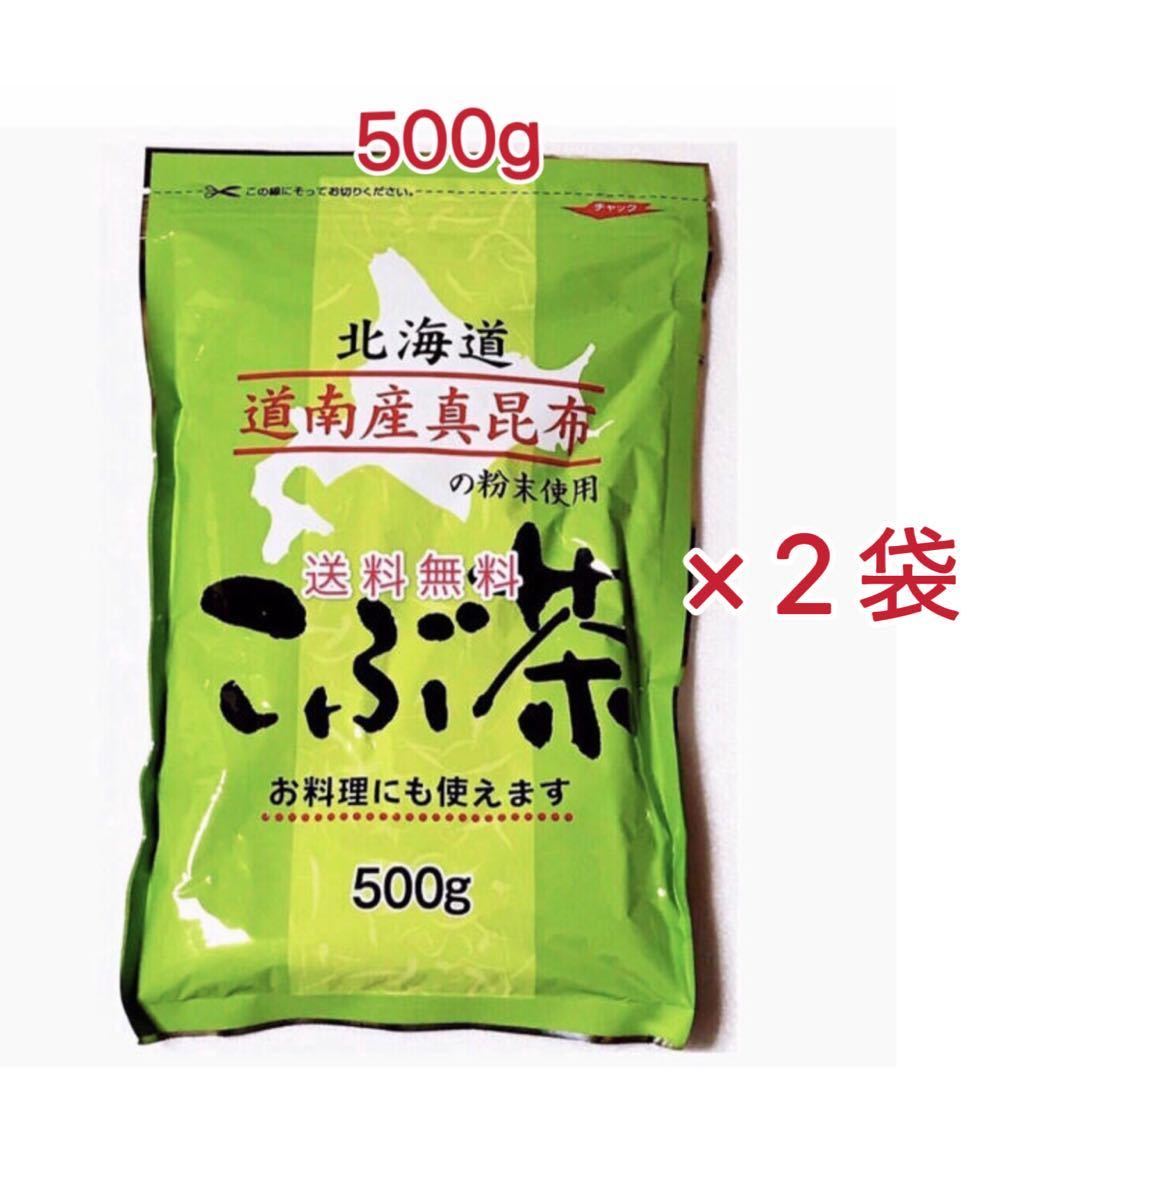 昆布茶 500g×2袋 1kg 北海道道南産真昆布 送料無料 国内即発送 1kg